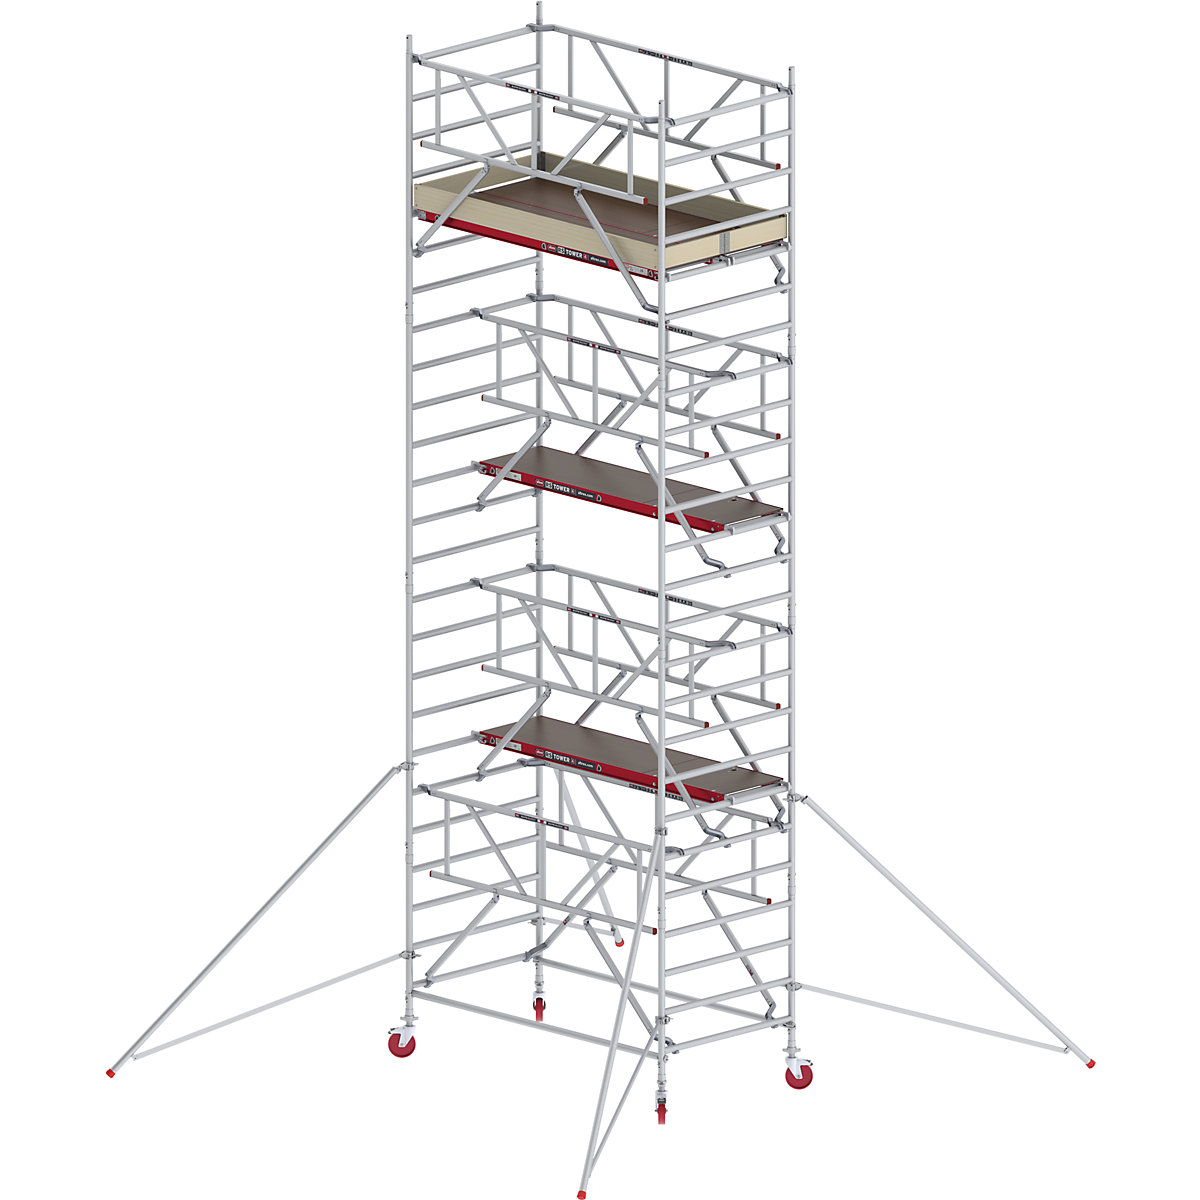 Andaime móvel largo RS TOWER 42 com Safe-Quick® – Altrex, plataforma de madeira, comprimento 2,45 m, altura de trabalho 8,20 m-8